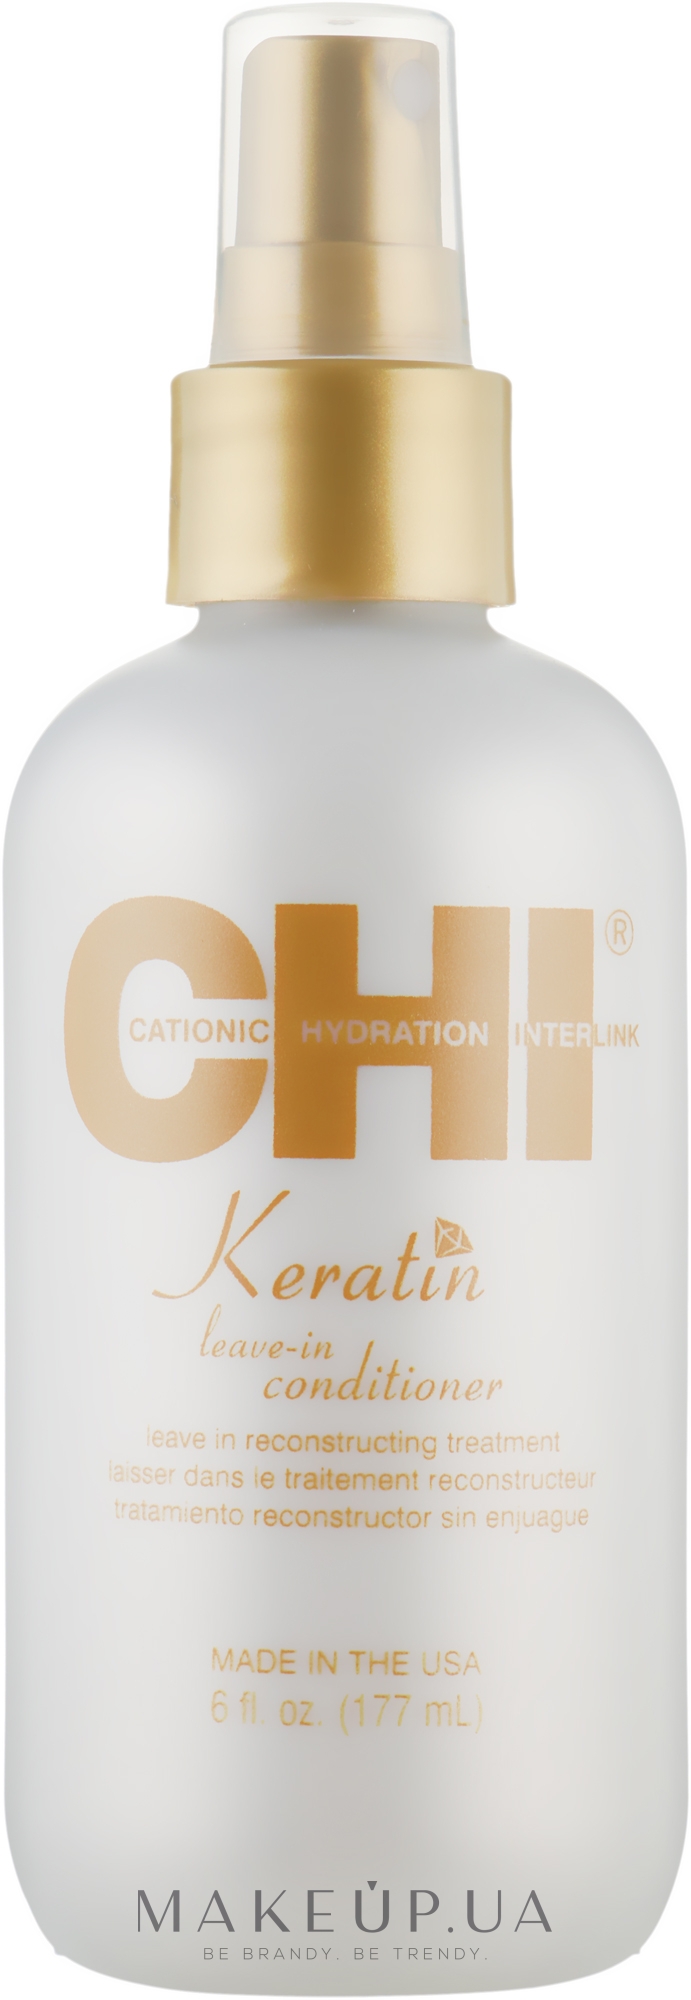 Незмивний кератиновий кондиціонер для волосся - CHI Keratin Weightless Leave in Conditioner — фото 177ml